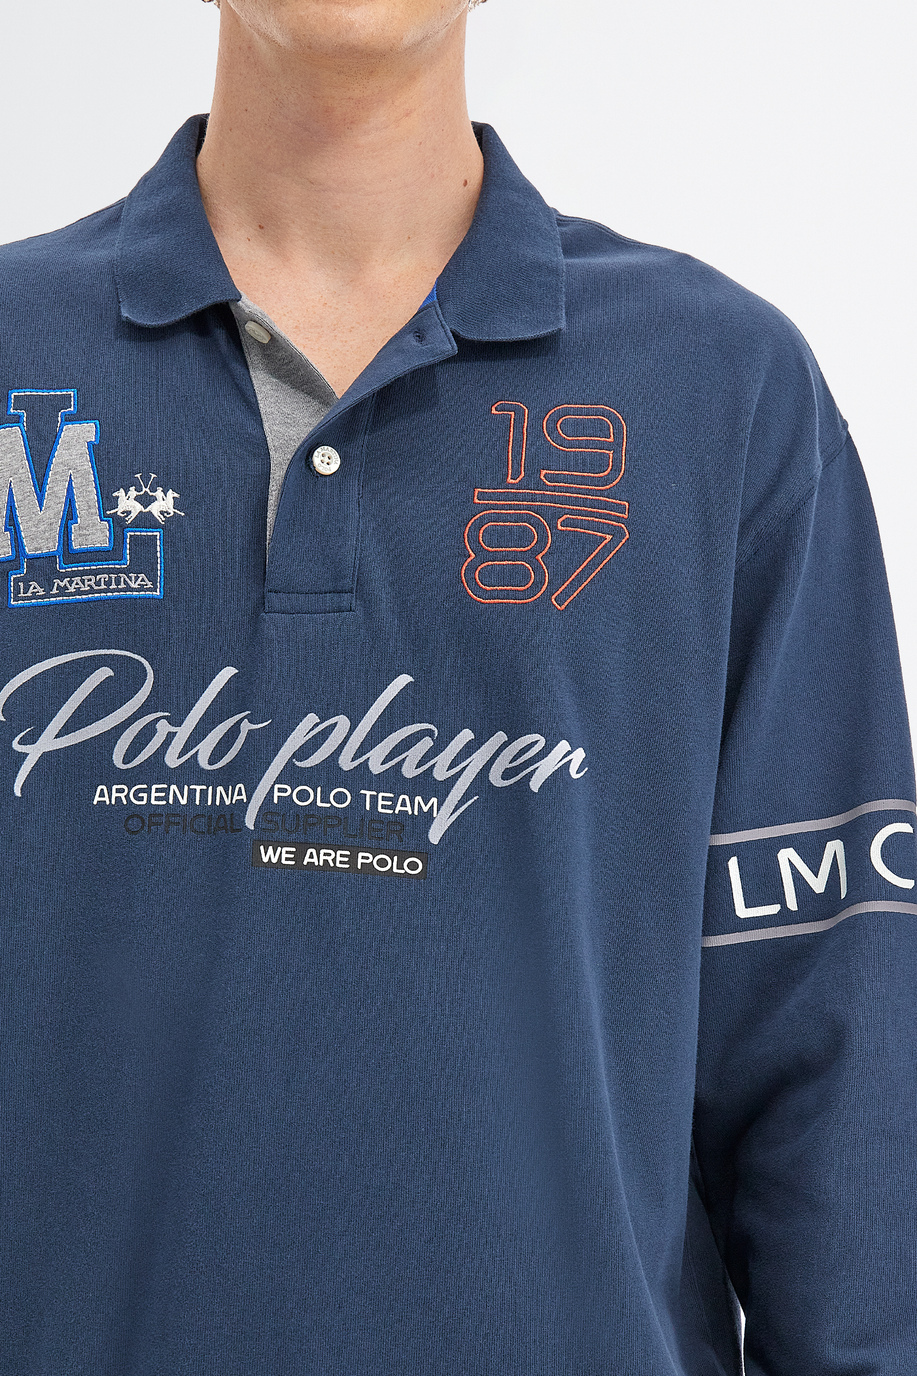 Polo homme Inmortales en jersey de coton coupe confort manches longues - Homme | La Martina - Official Online Shop